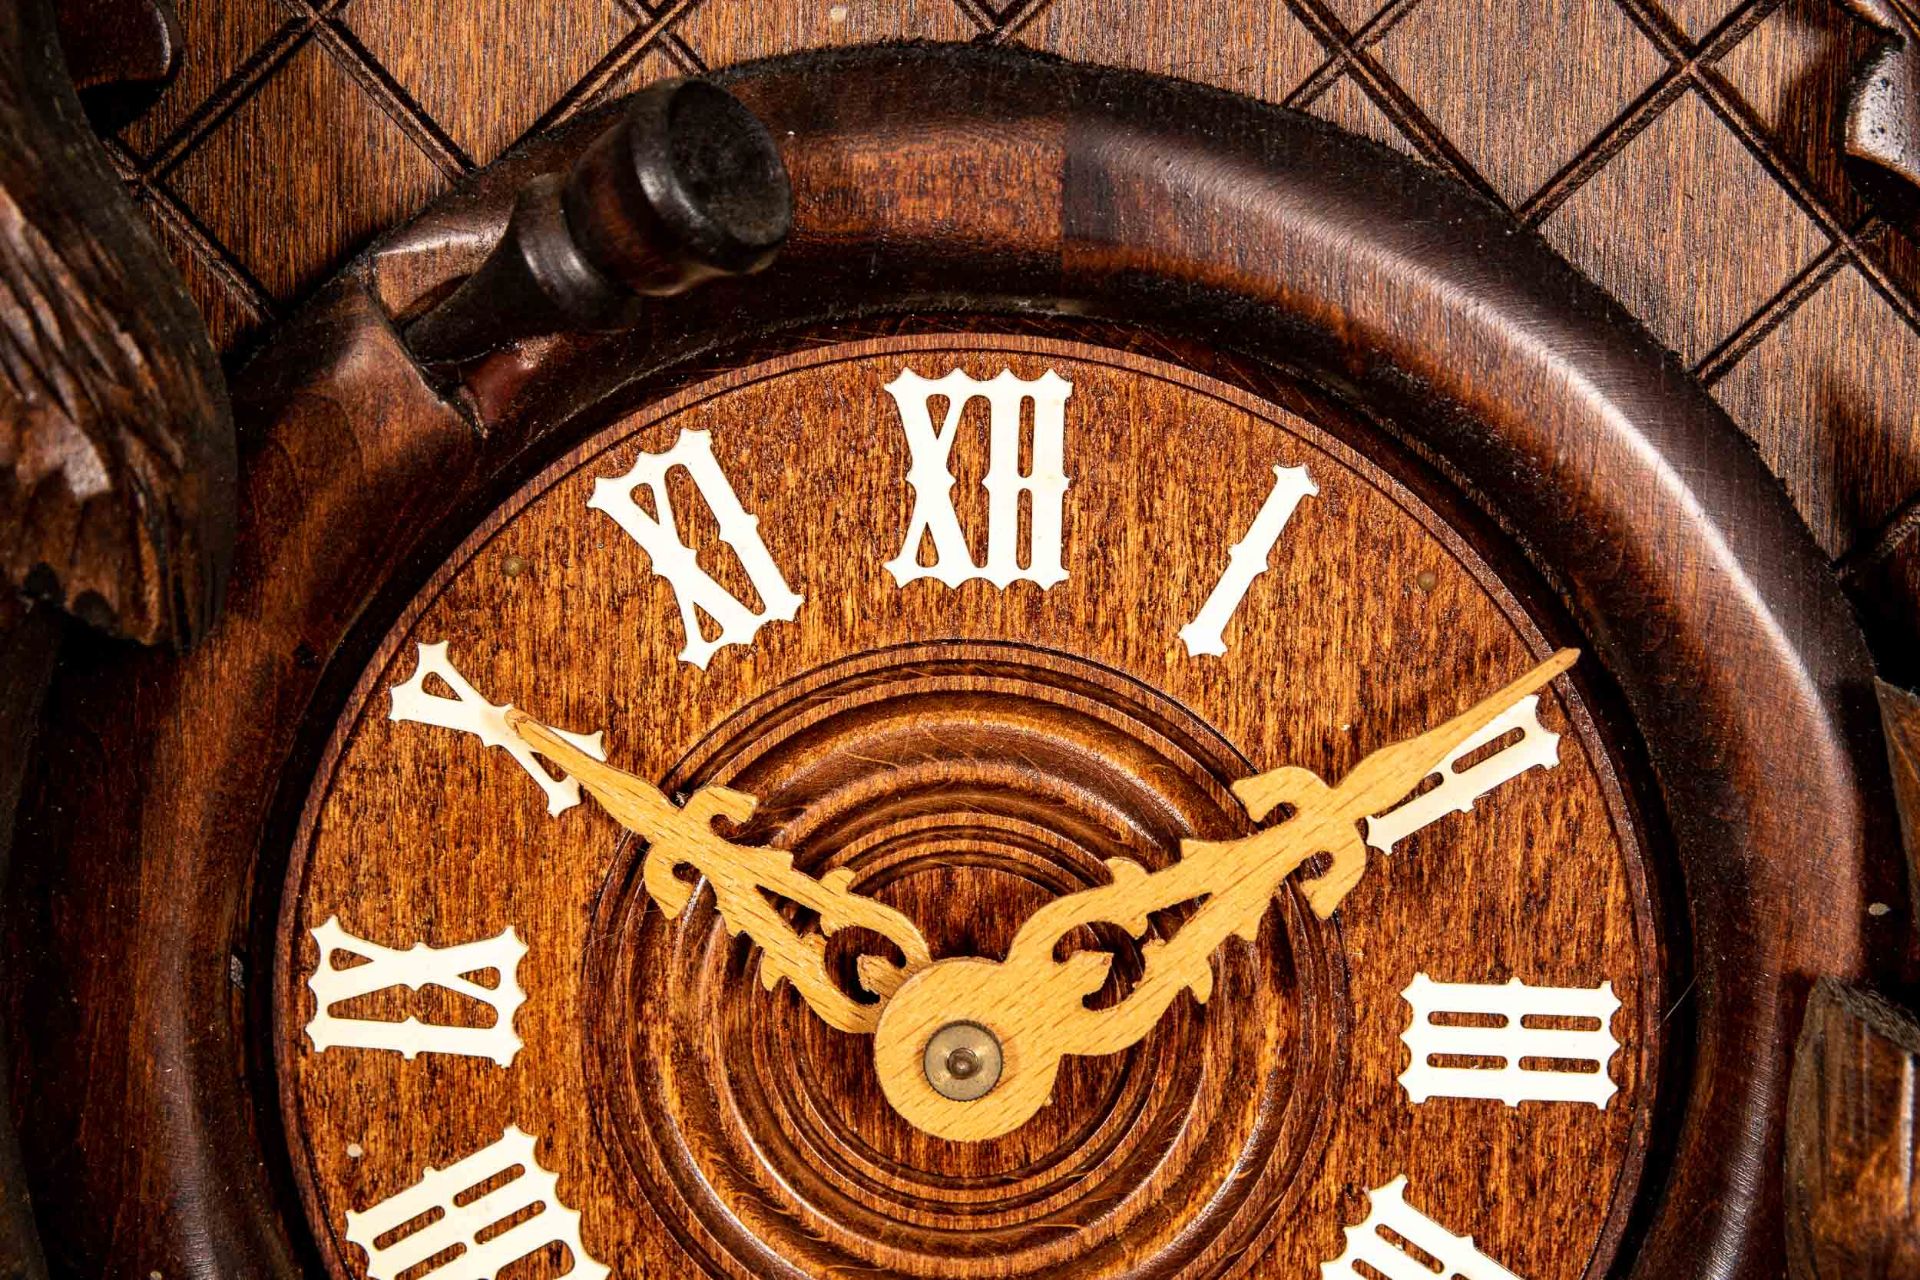 Imposante "Kuckucks"-Uhr, 2. Hälfte 20. Jhdt., aufwändig beschnitztes, nussbaumfarbiges Holzgehäuse - Bild 4 aus 15